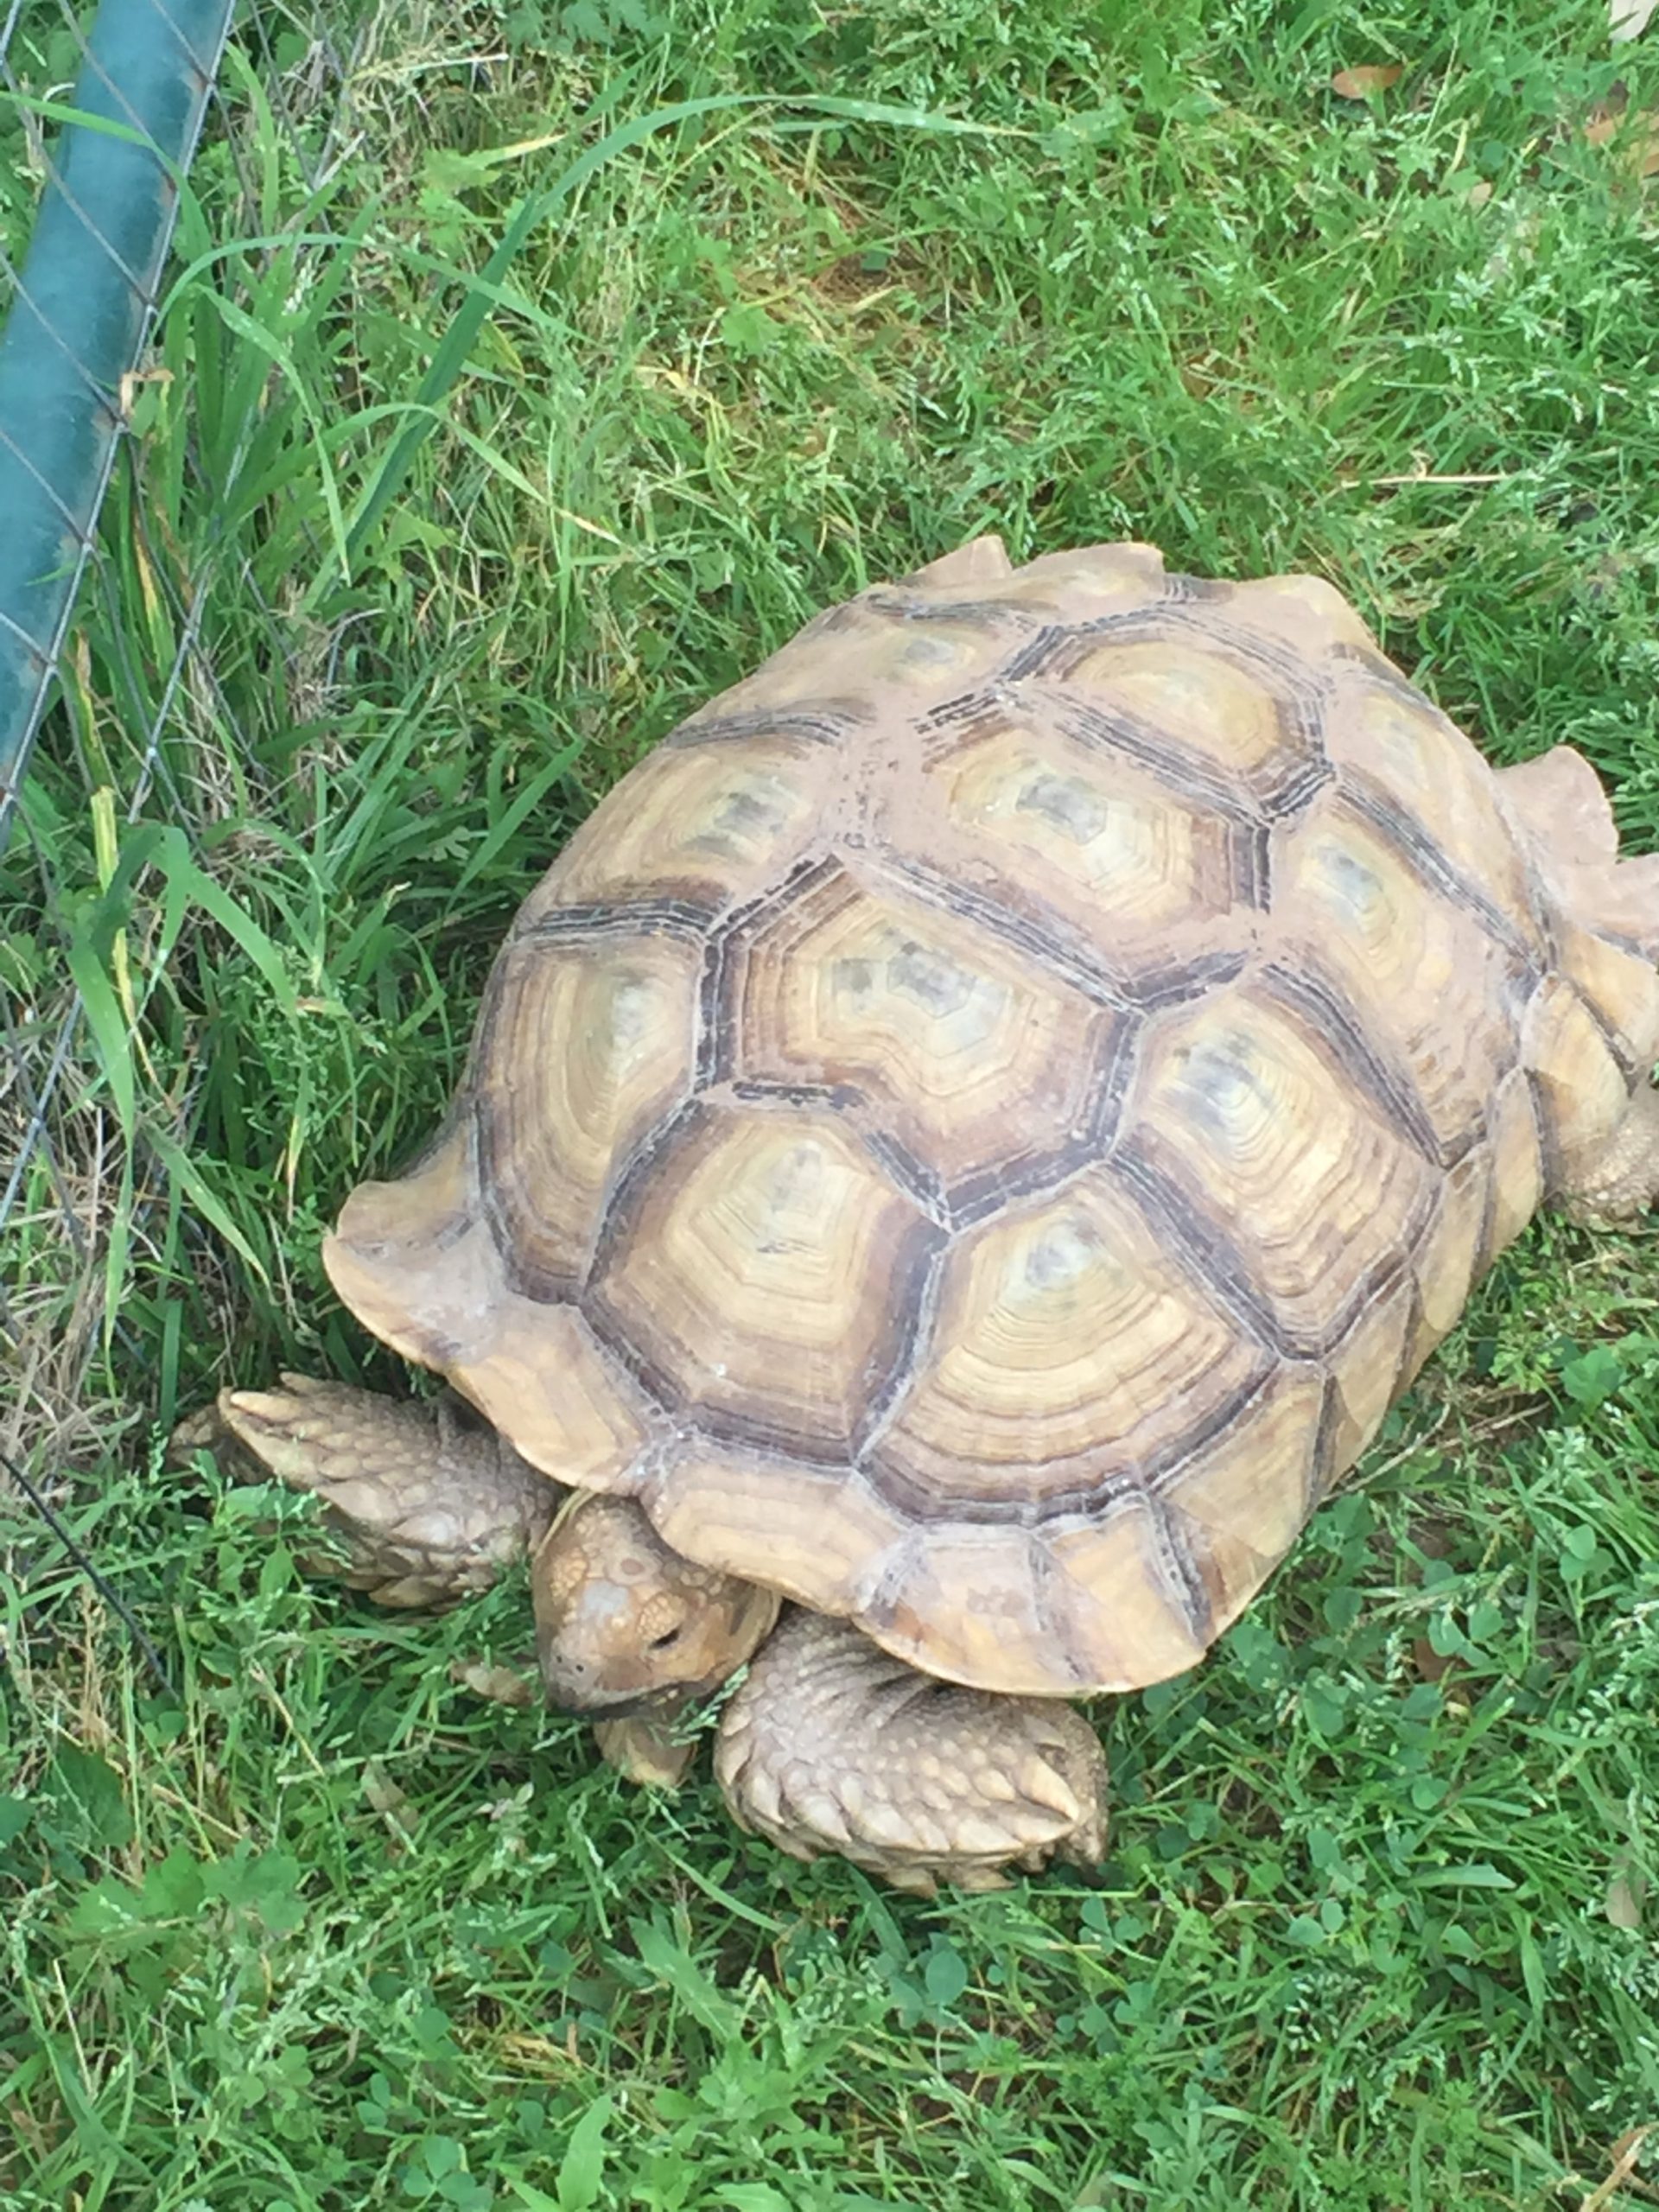 Tucker the Tortoise